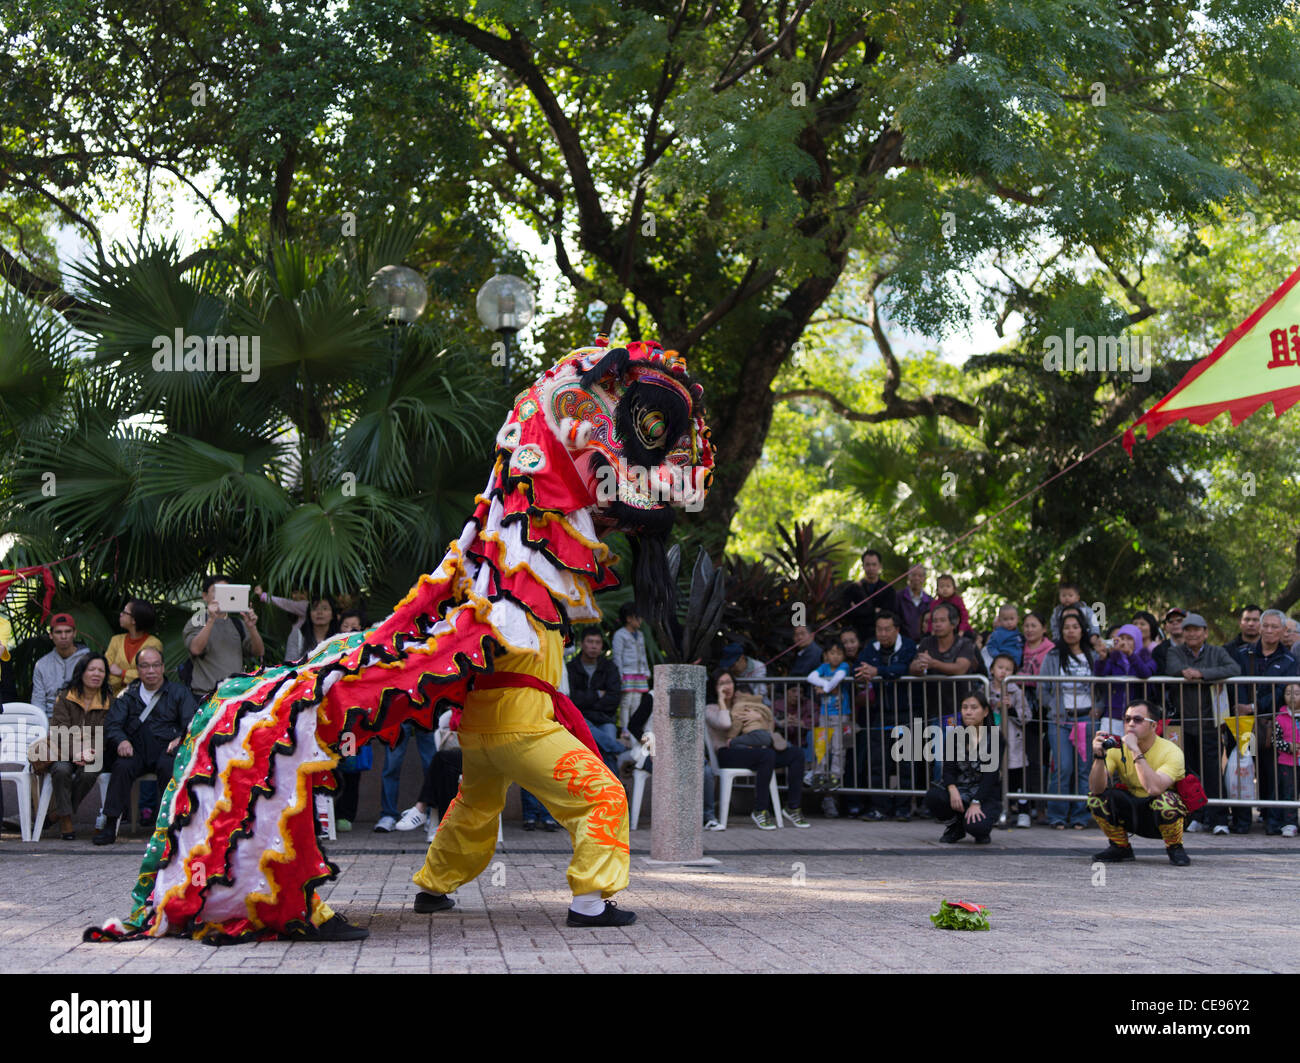 dh Kowloon Park arti marziali TSIM SHA TSUI HONG KONG I ragazzi cinesi tradizionali leone dance esibizione turistica folla tradizione ragazzo cina estremo oriente Foto Stock